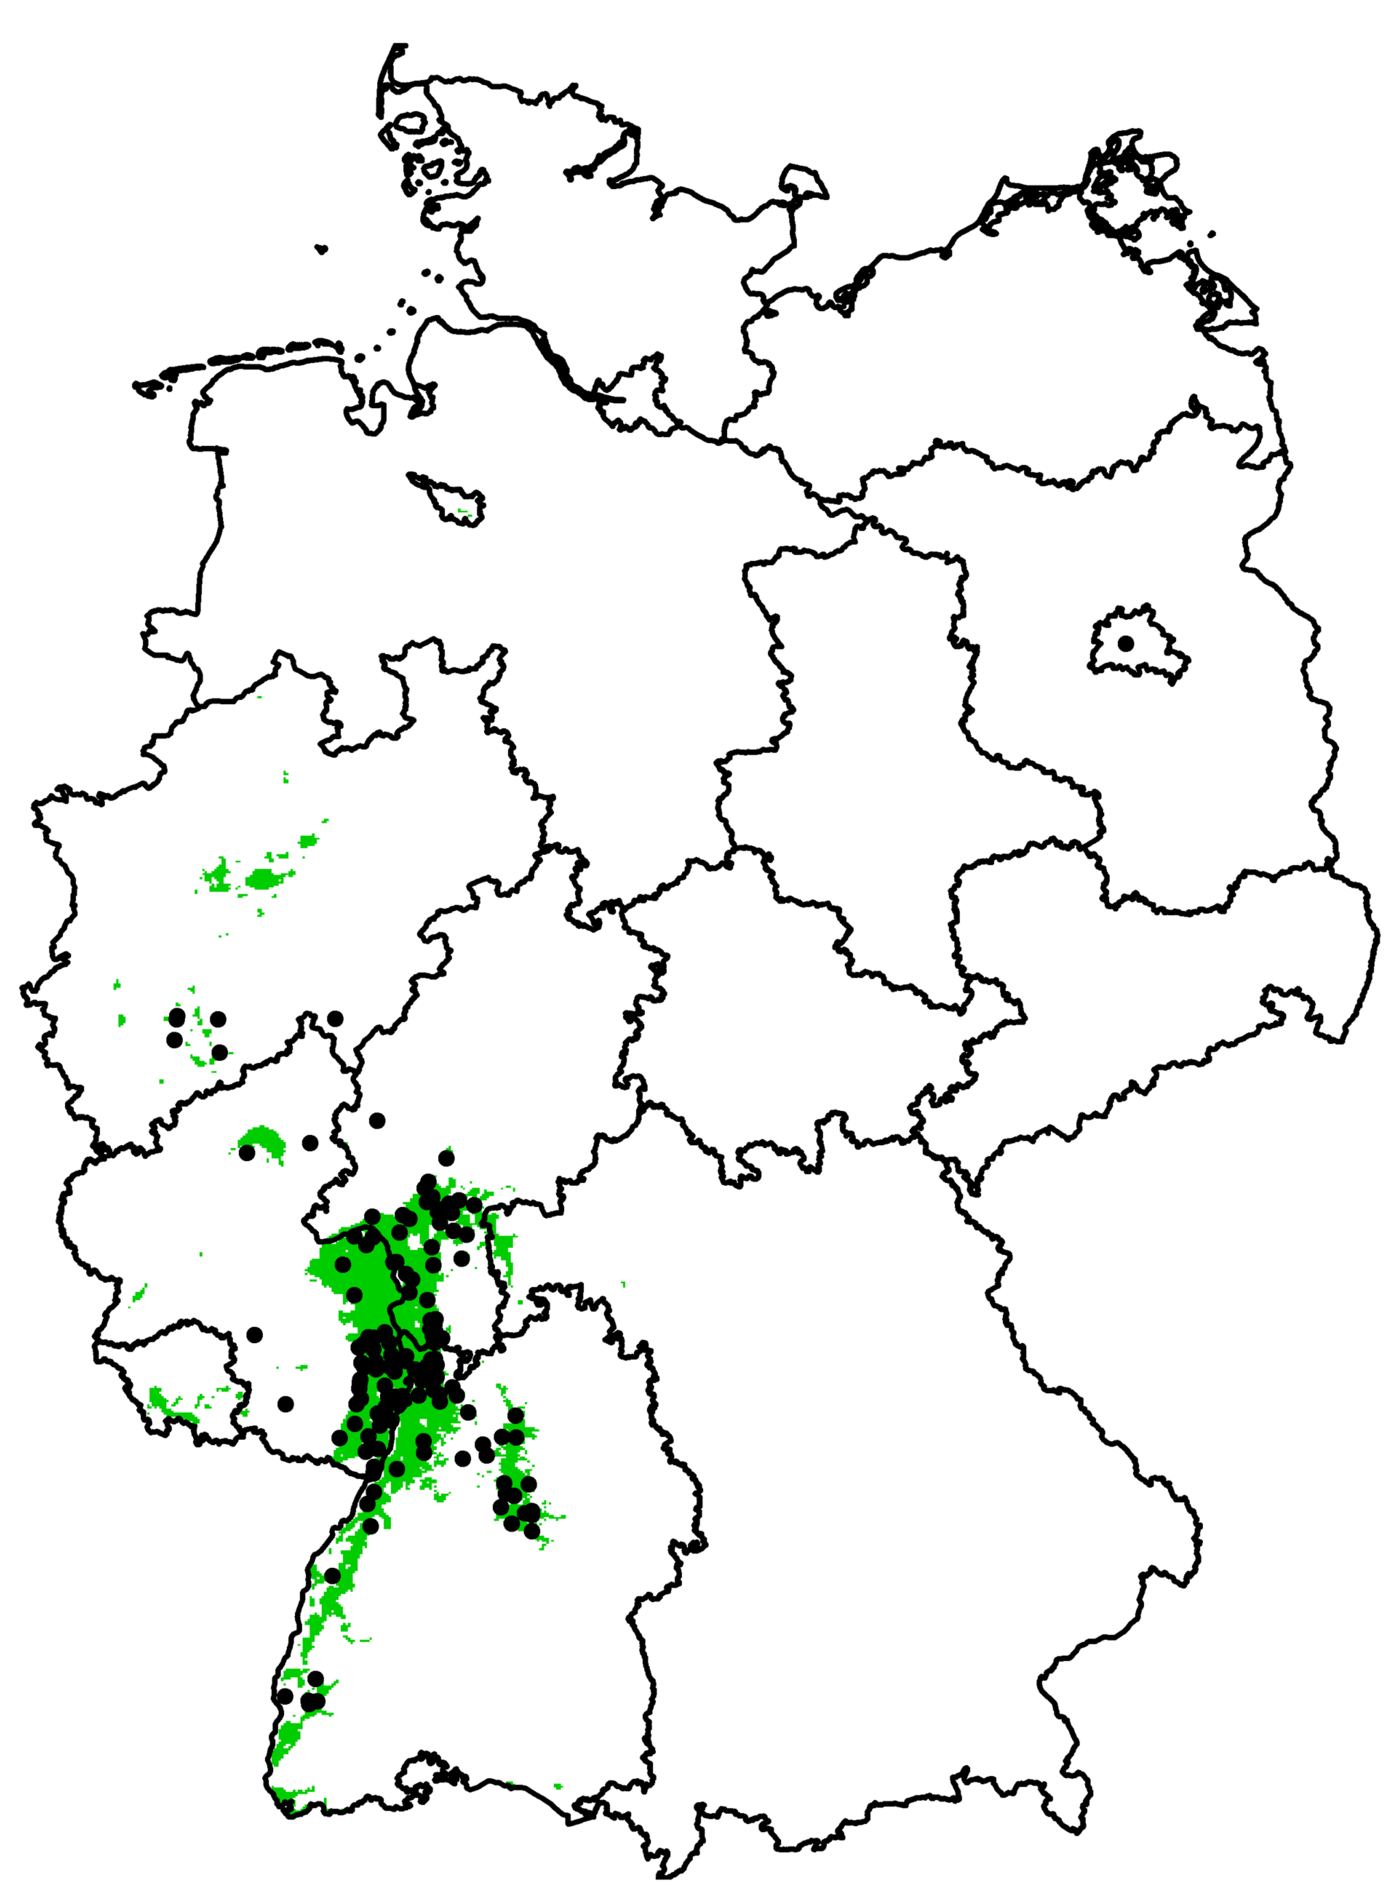 Das Bild zeigt die Usutu-Virus-Verbreitung auf einer Deutschlandkarte von 2011